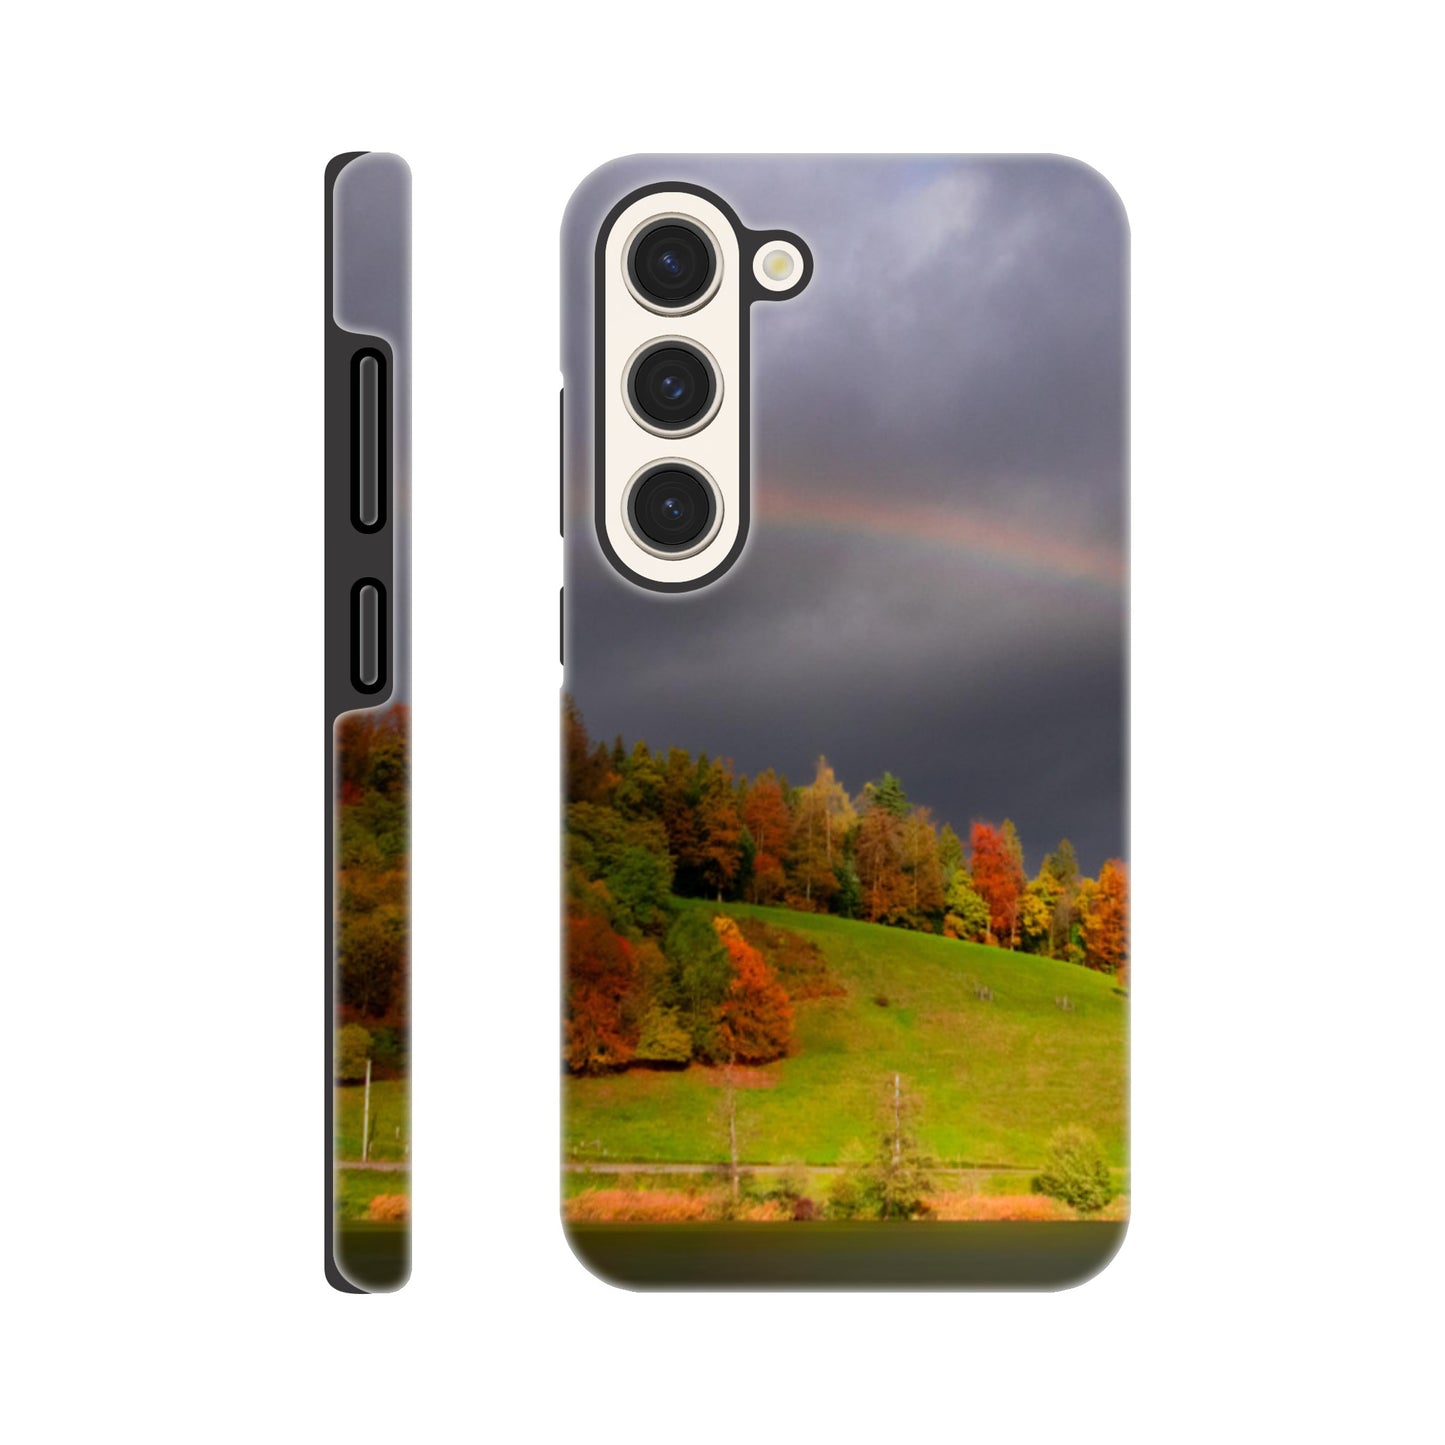 Regenbogenmotiv Hartschalen-Case Handyhülle für iPhone und Samsung